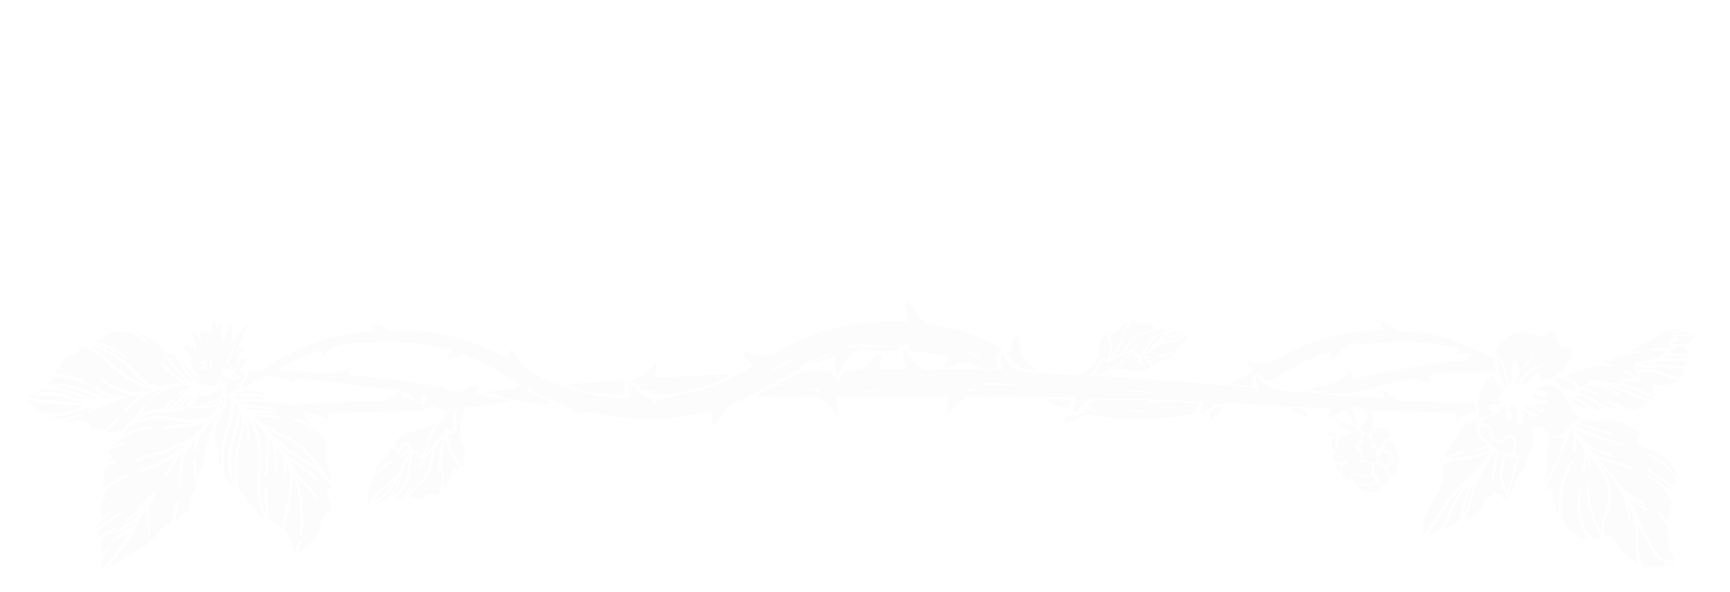 Bramble: King Mountain The